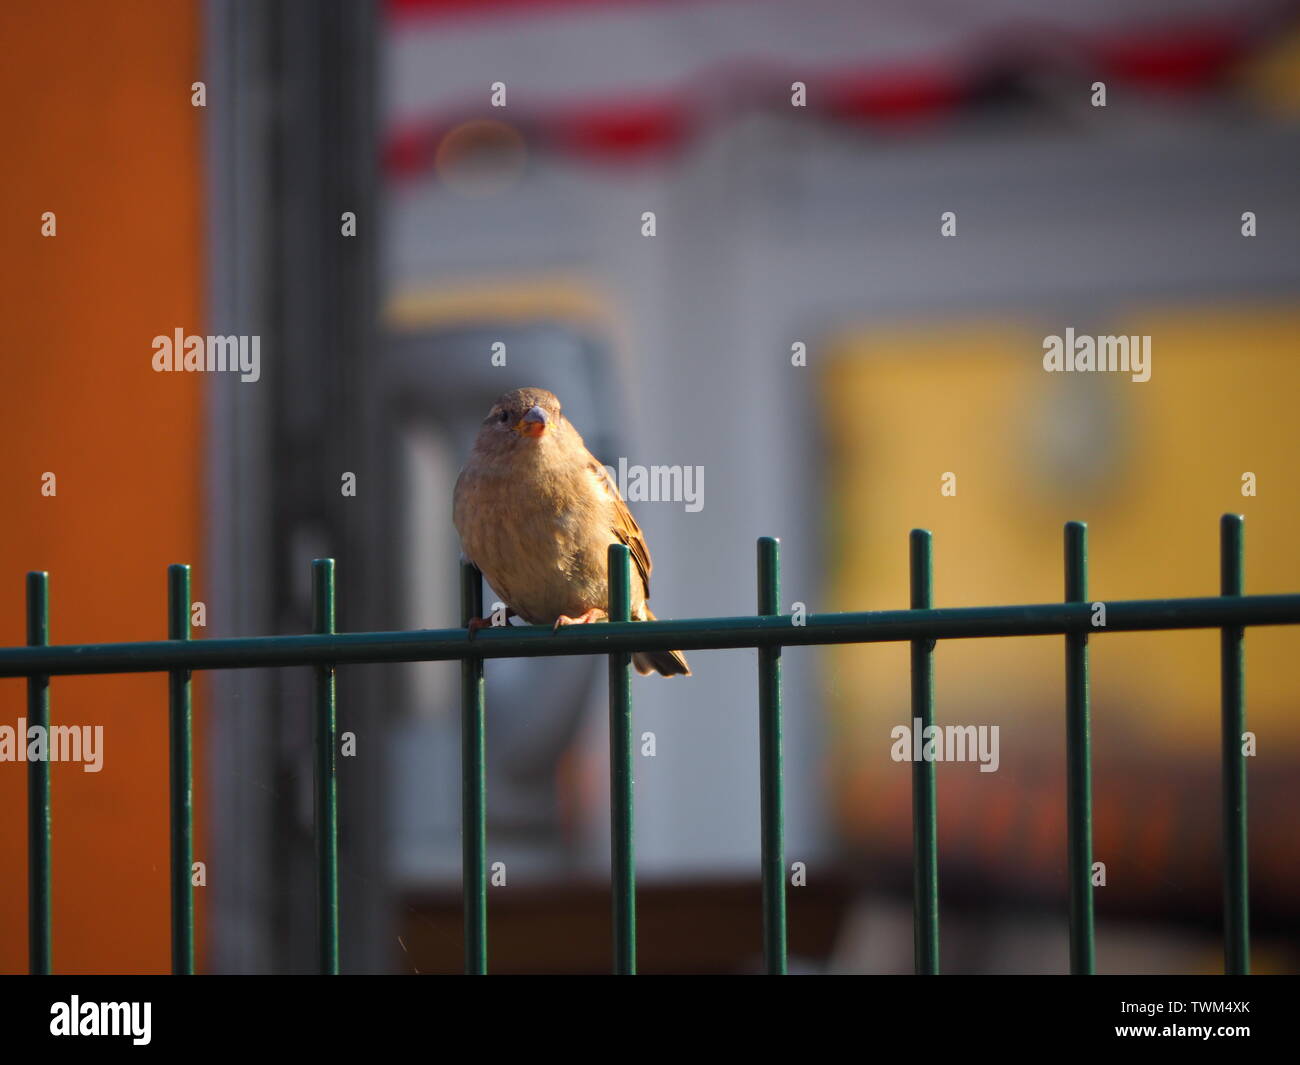 Sparrow on a fence Stock Photo